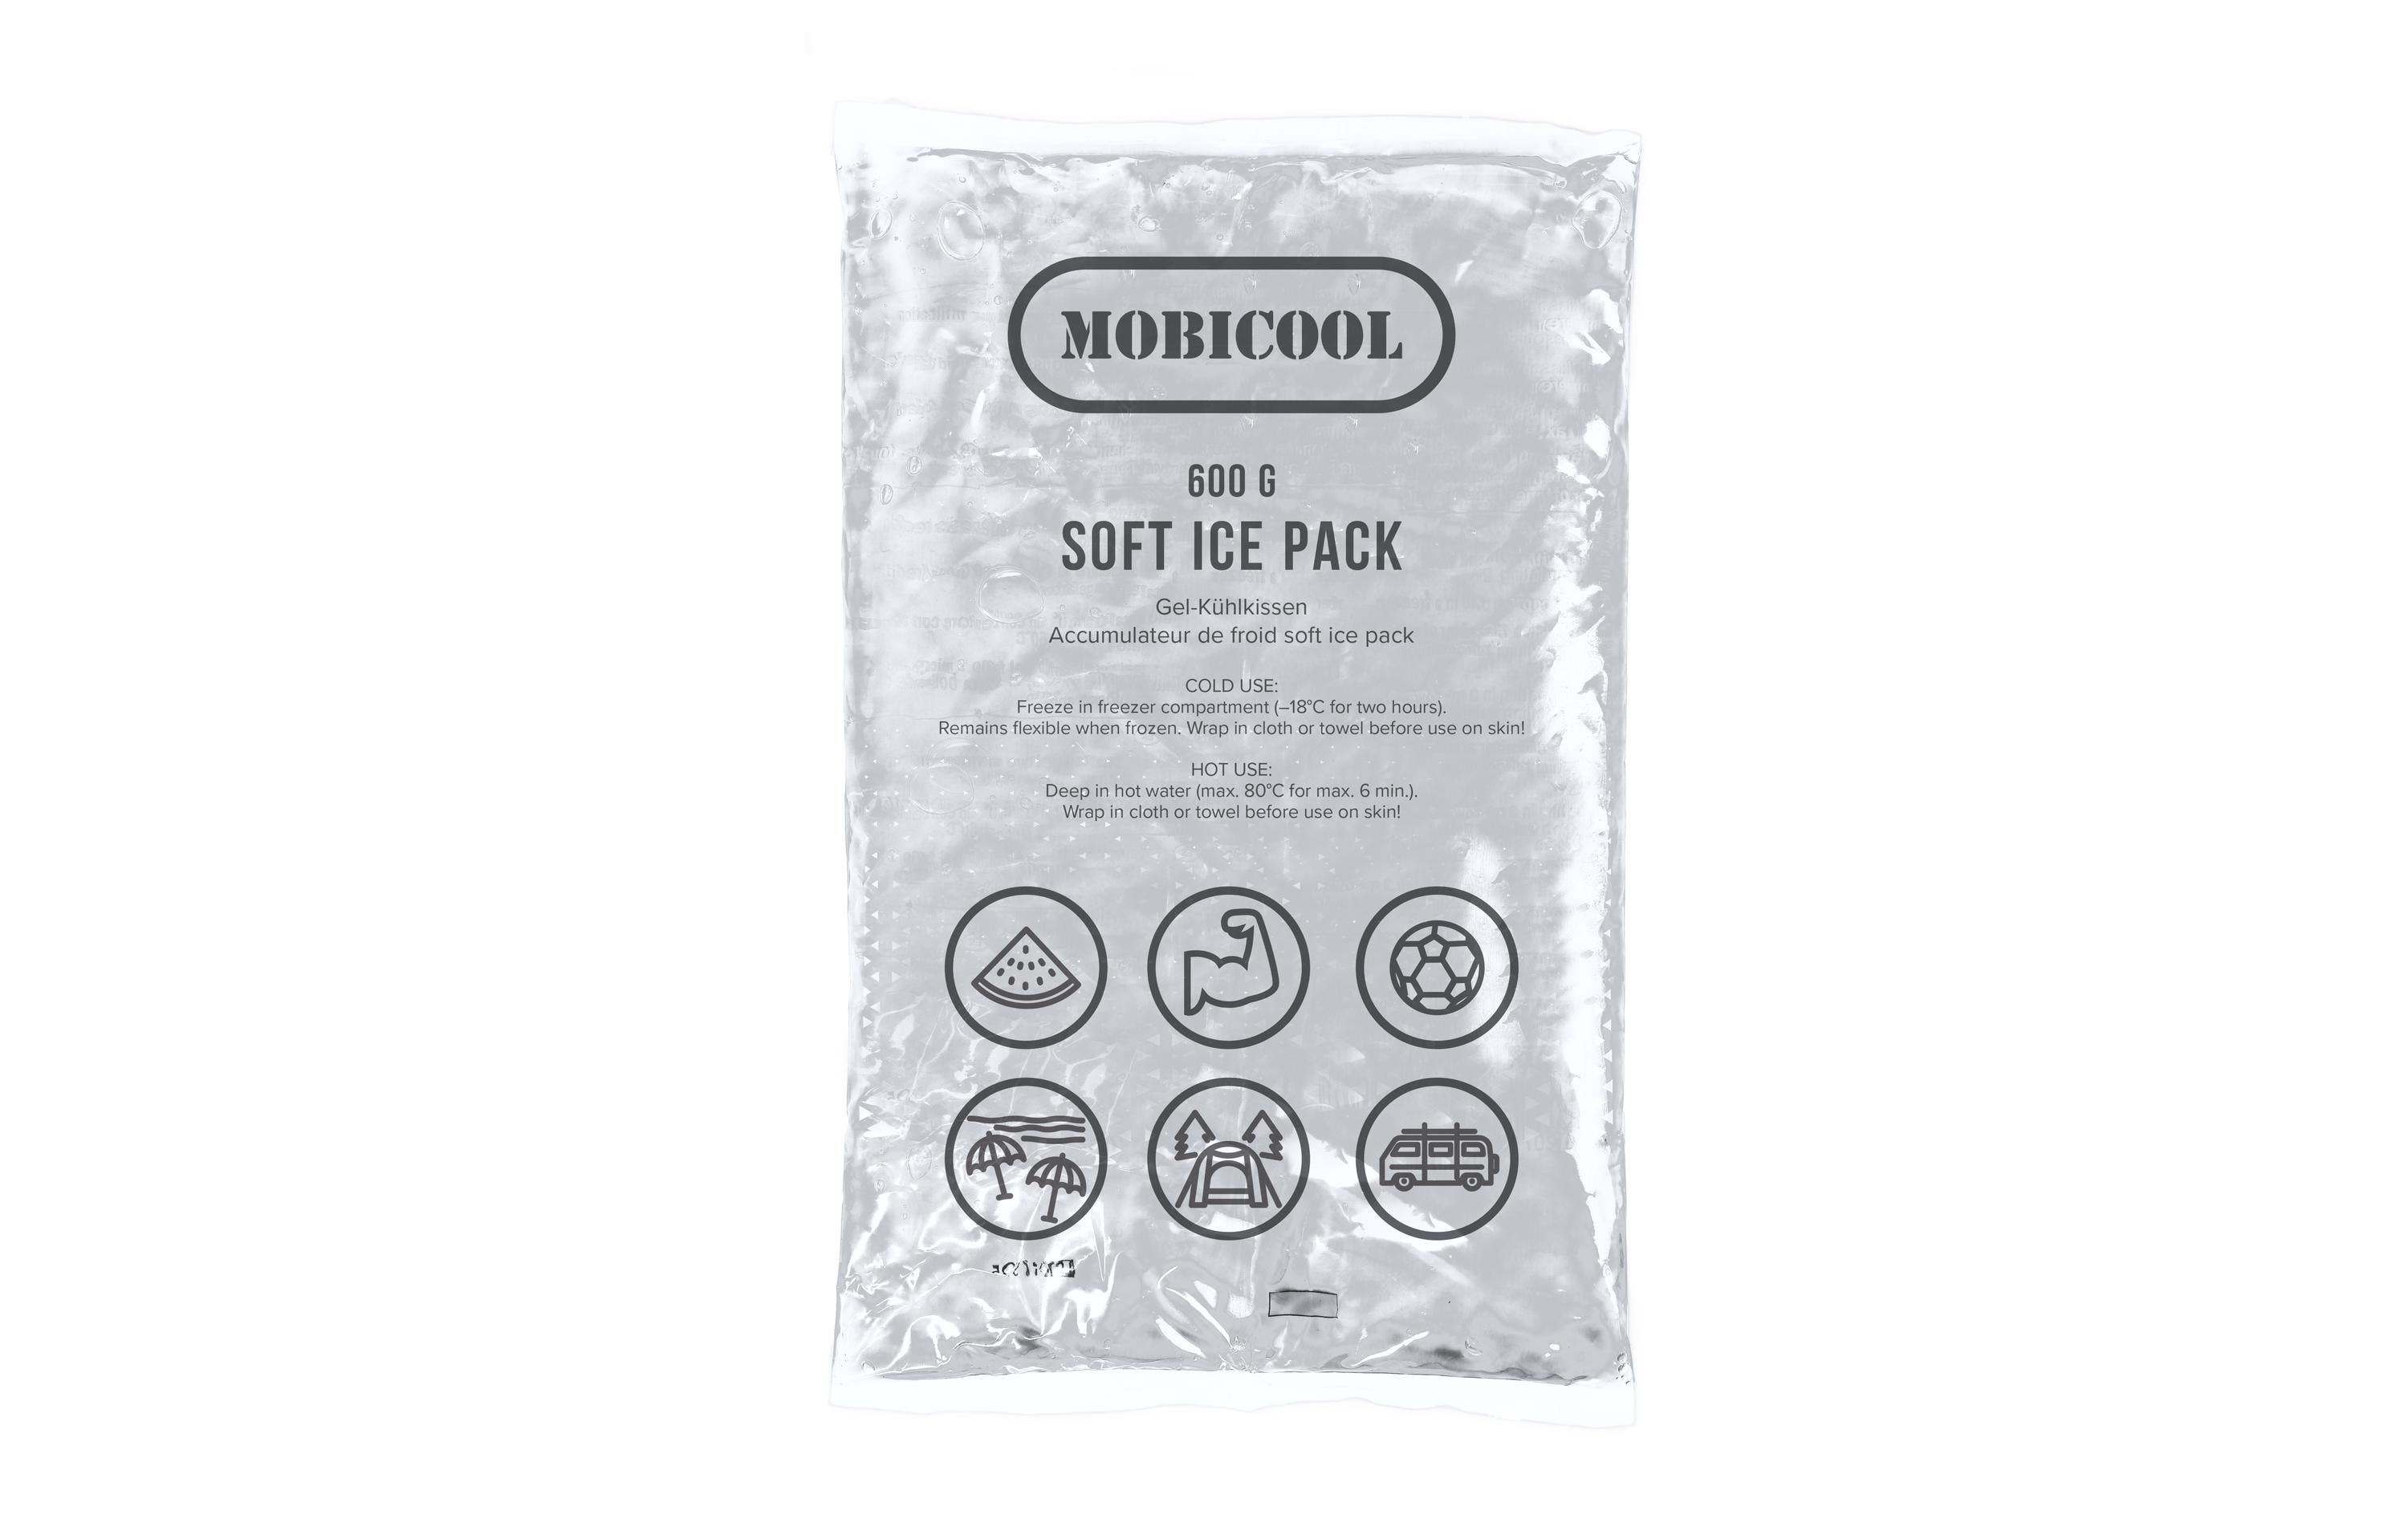 Mobicool Kühlelement Soft Ice Pack 600 g